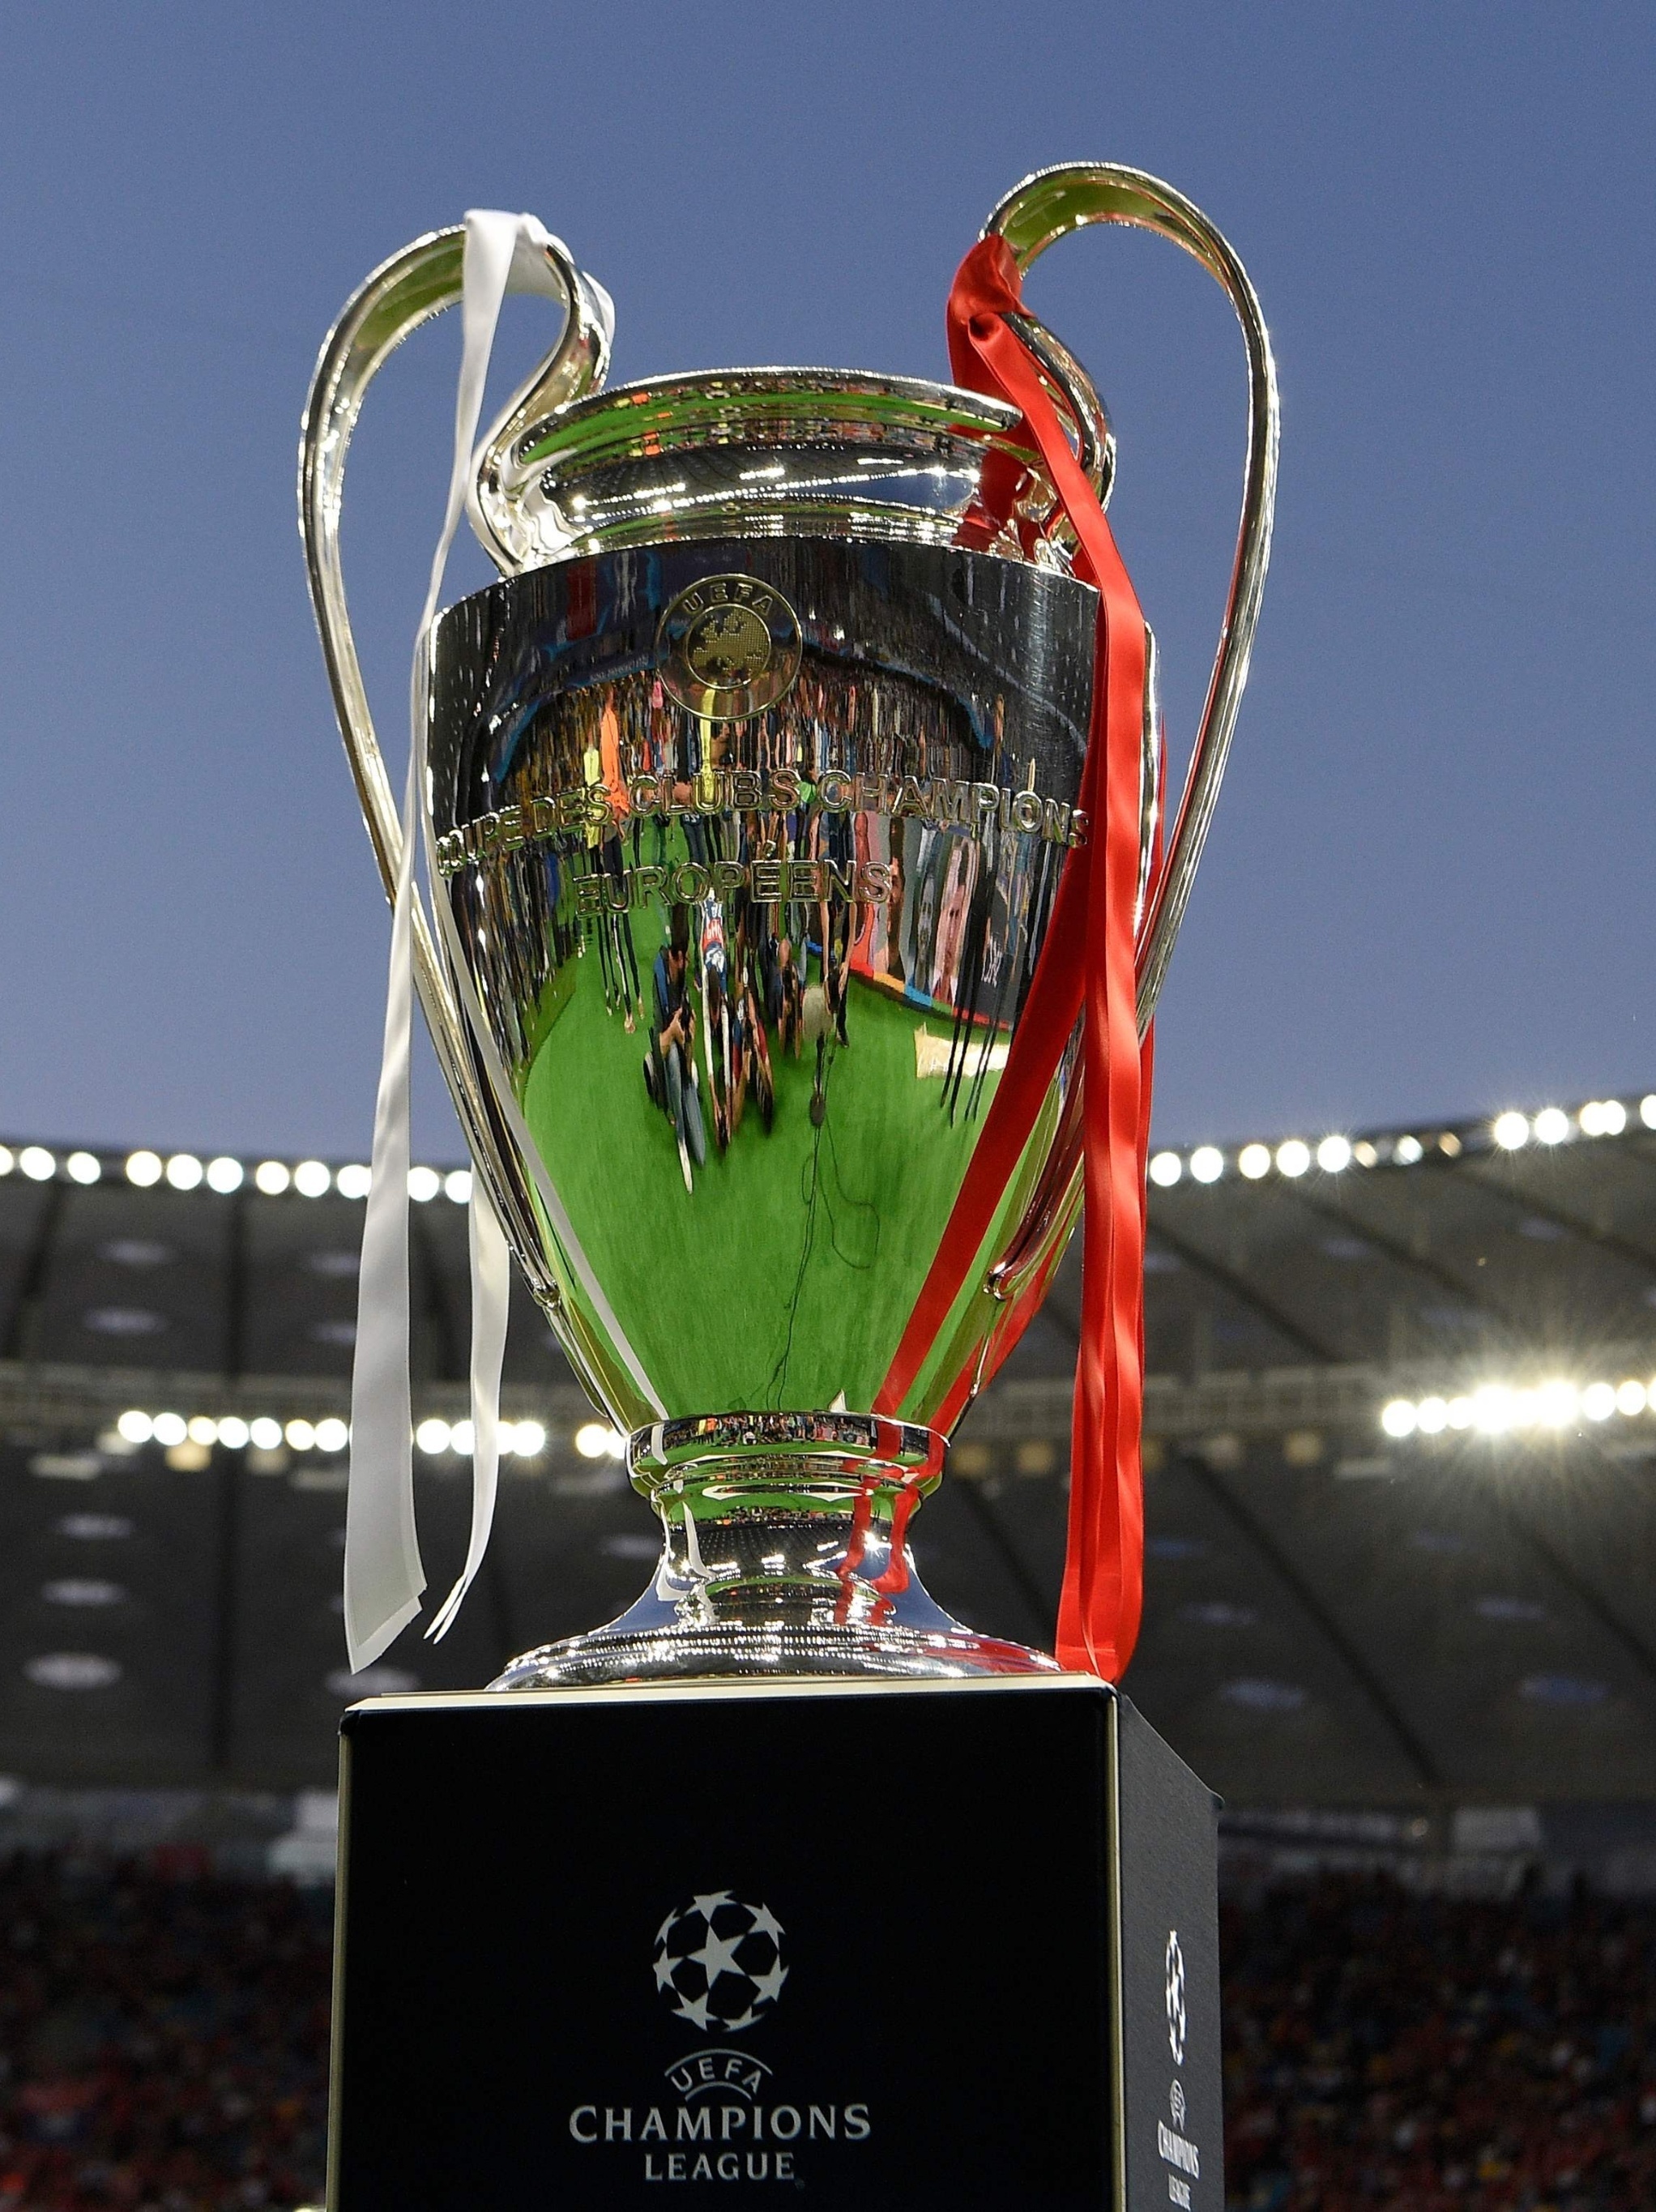 Provisório - A UEFA Champions League regressa já hoje e amanhã! Não perca  os melhores jogos com transmissão no Provisório! ⚽️ 🍻